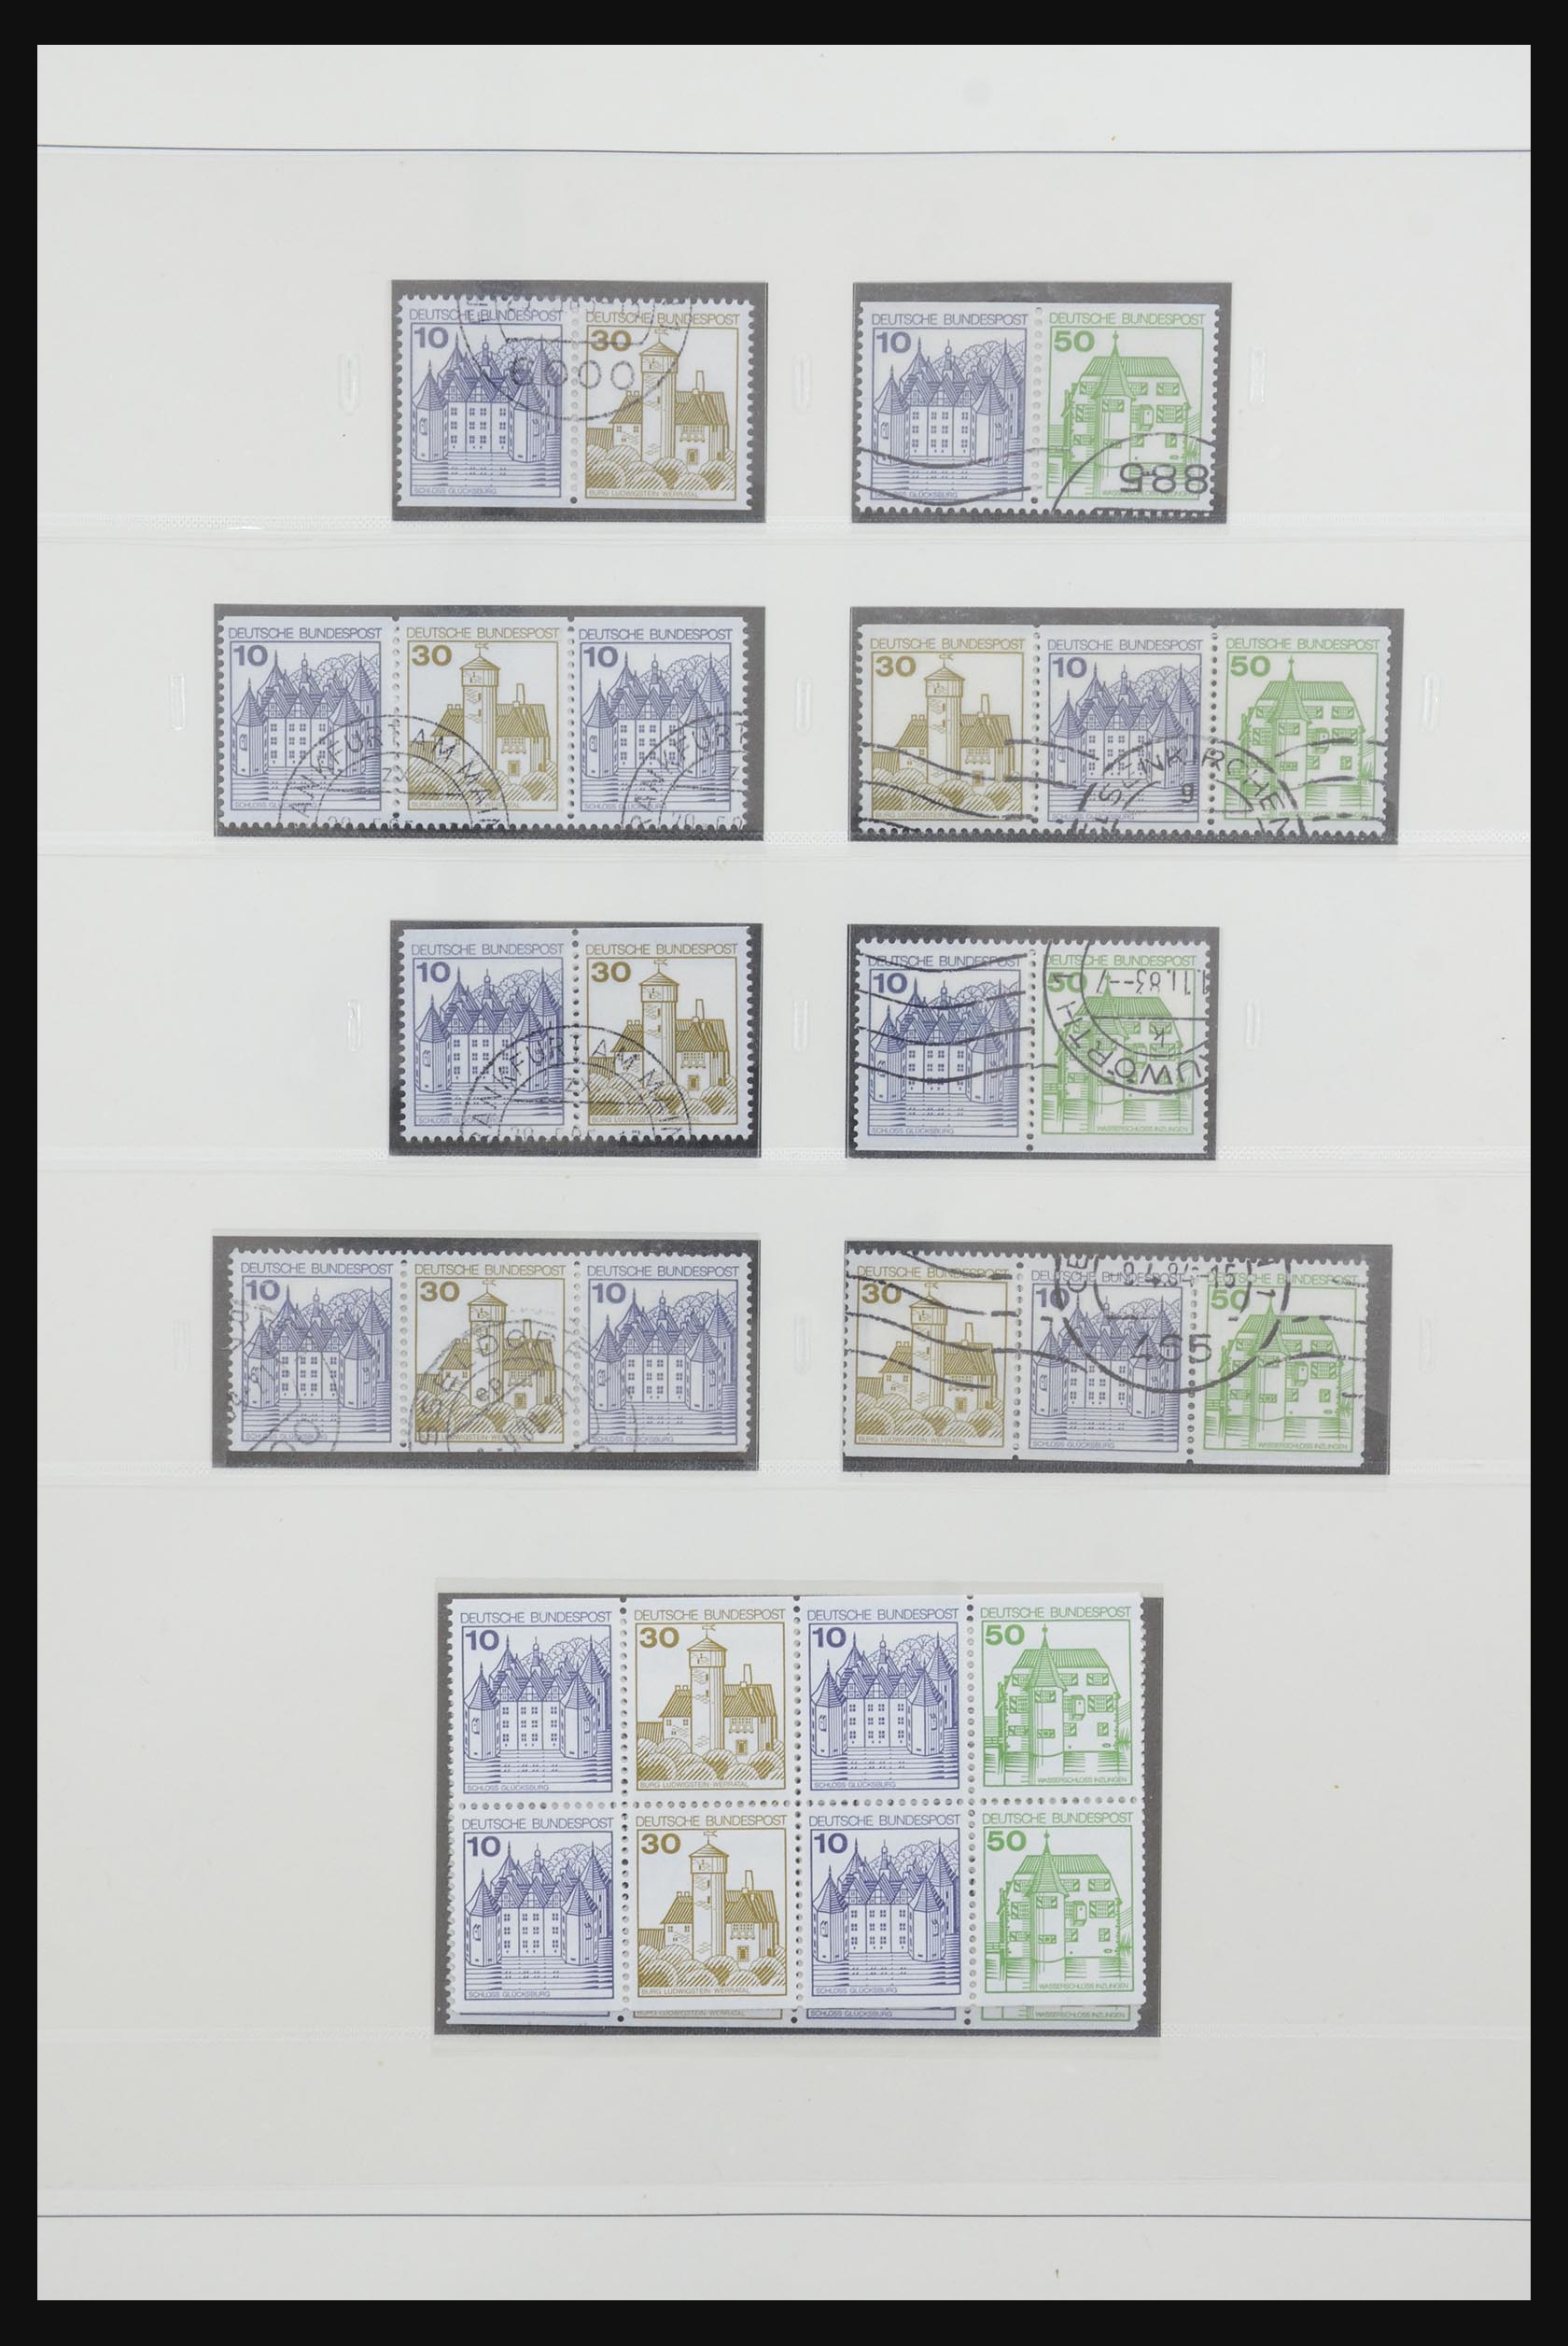 31842 061 - 31842 Bundespost combinaties 1951-2003.